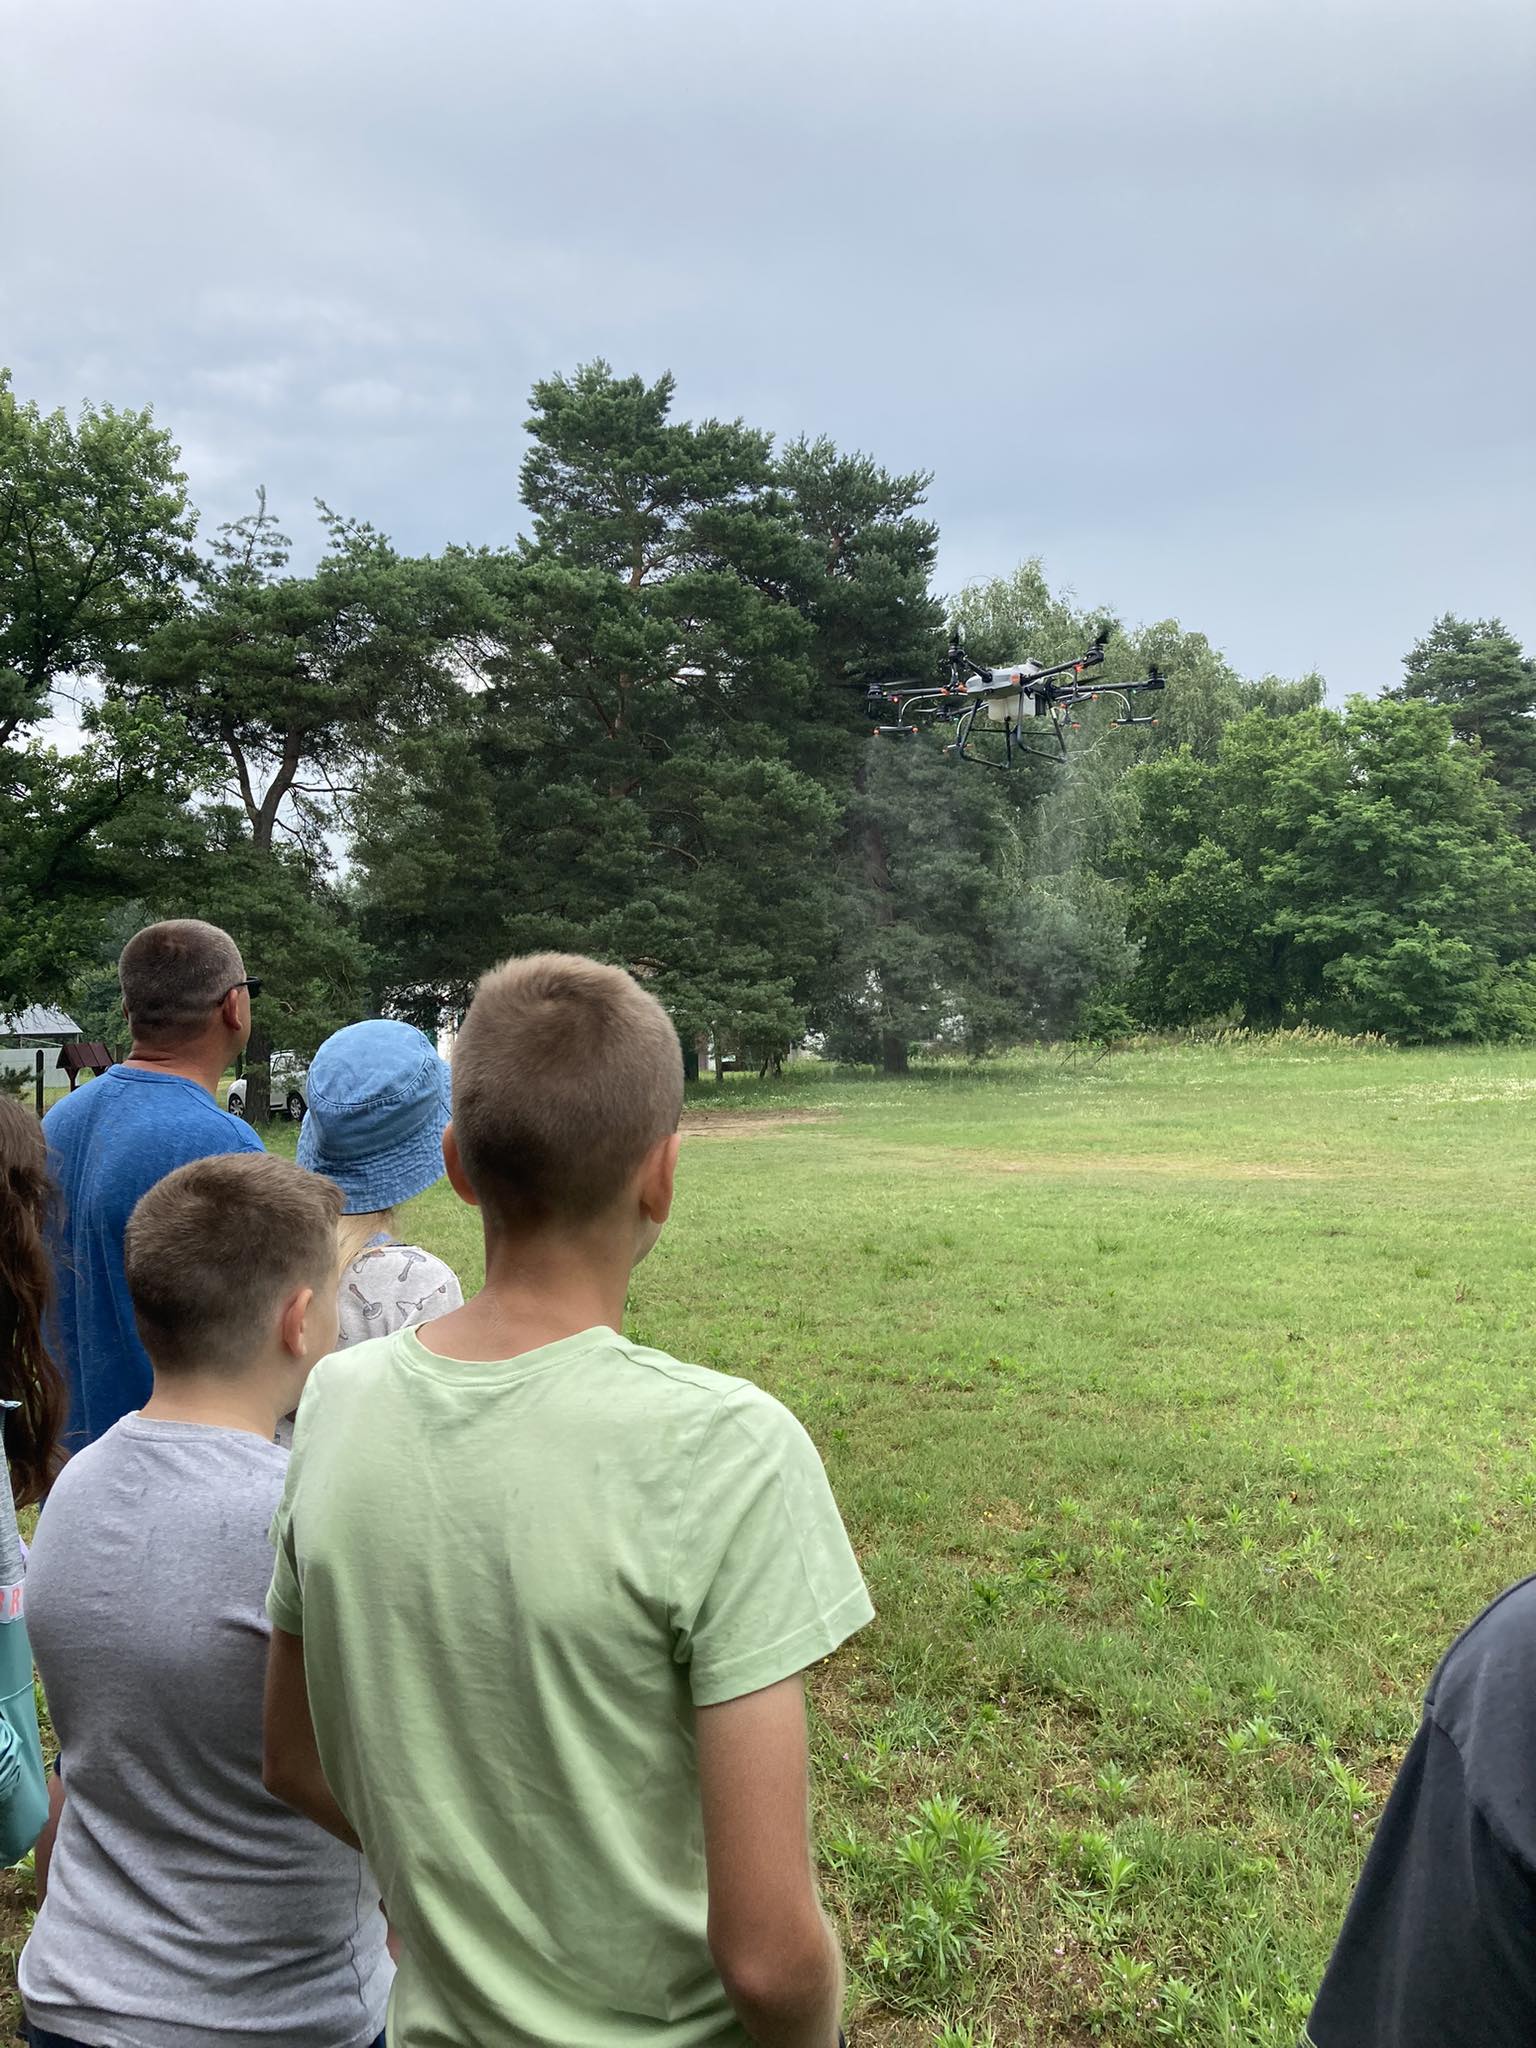 Gyerekek és felnőttek egy csoportja egy füves mezőn áll, és egy drónt néz. A drón a levegőben lebeg fákkal és felhős égbolttal a háttérben. Úgy tűnik, hogy a jelenet szabadtéri tevékenység vagy bemutató közben játszódik.